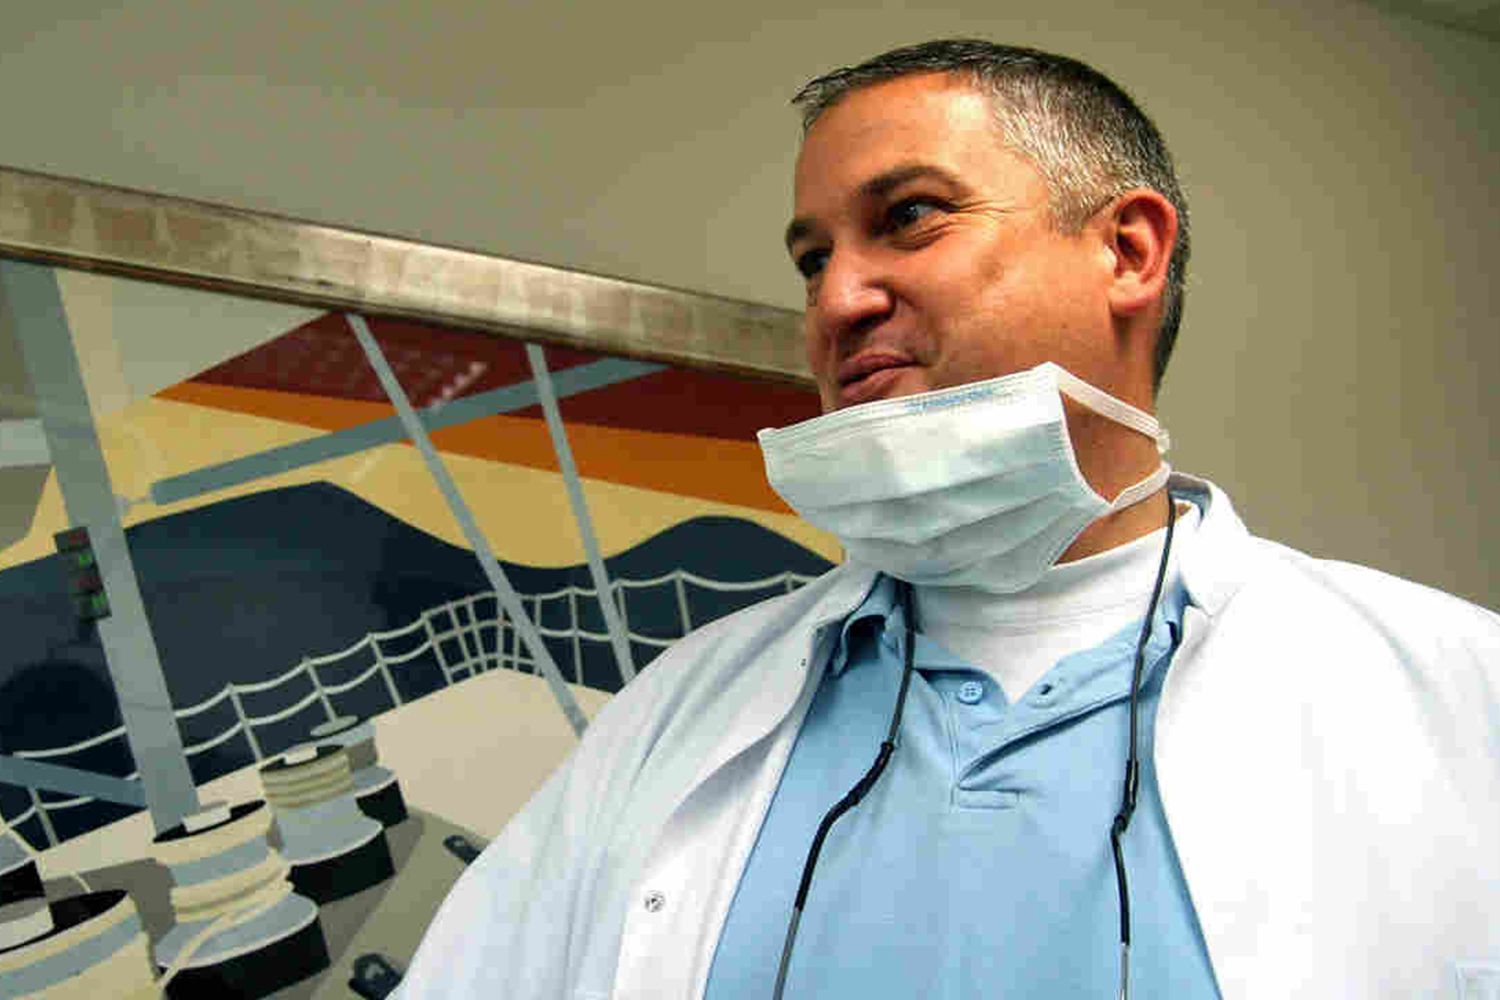 El 'dentista del terror' acusado de mutilar más de 100 bocas en Francia